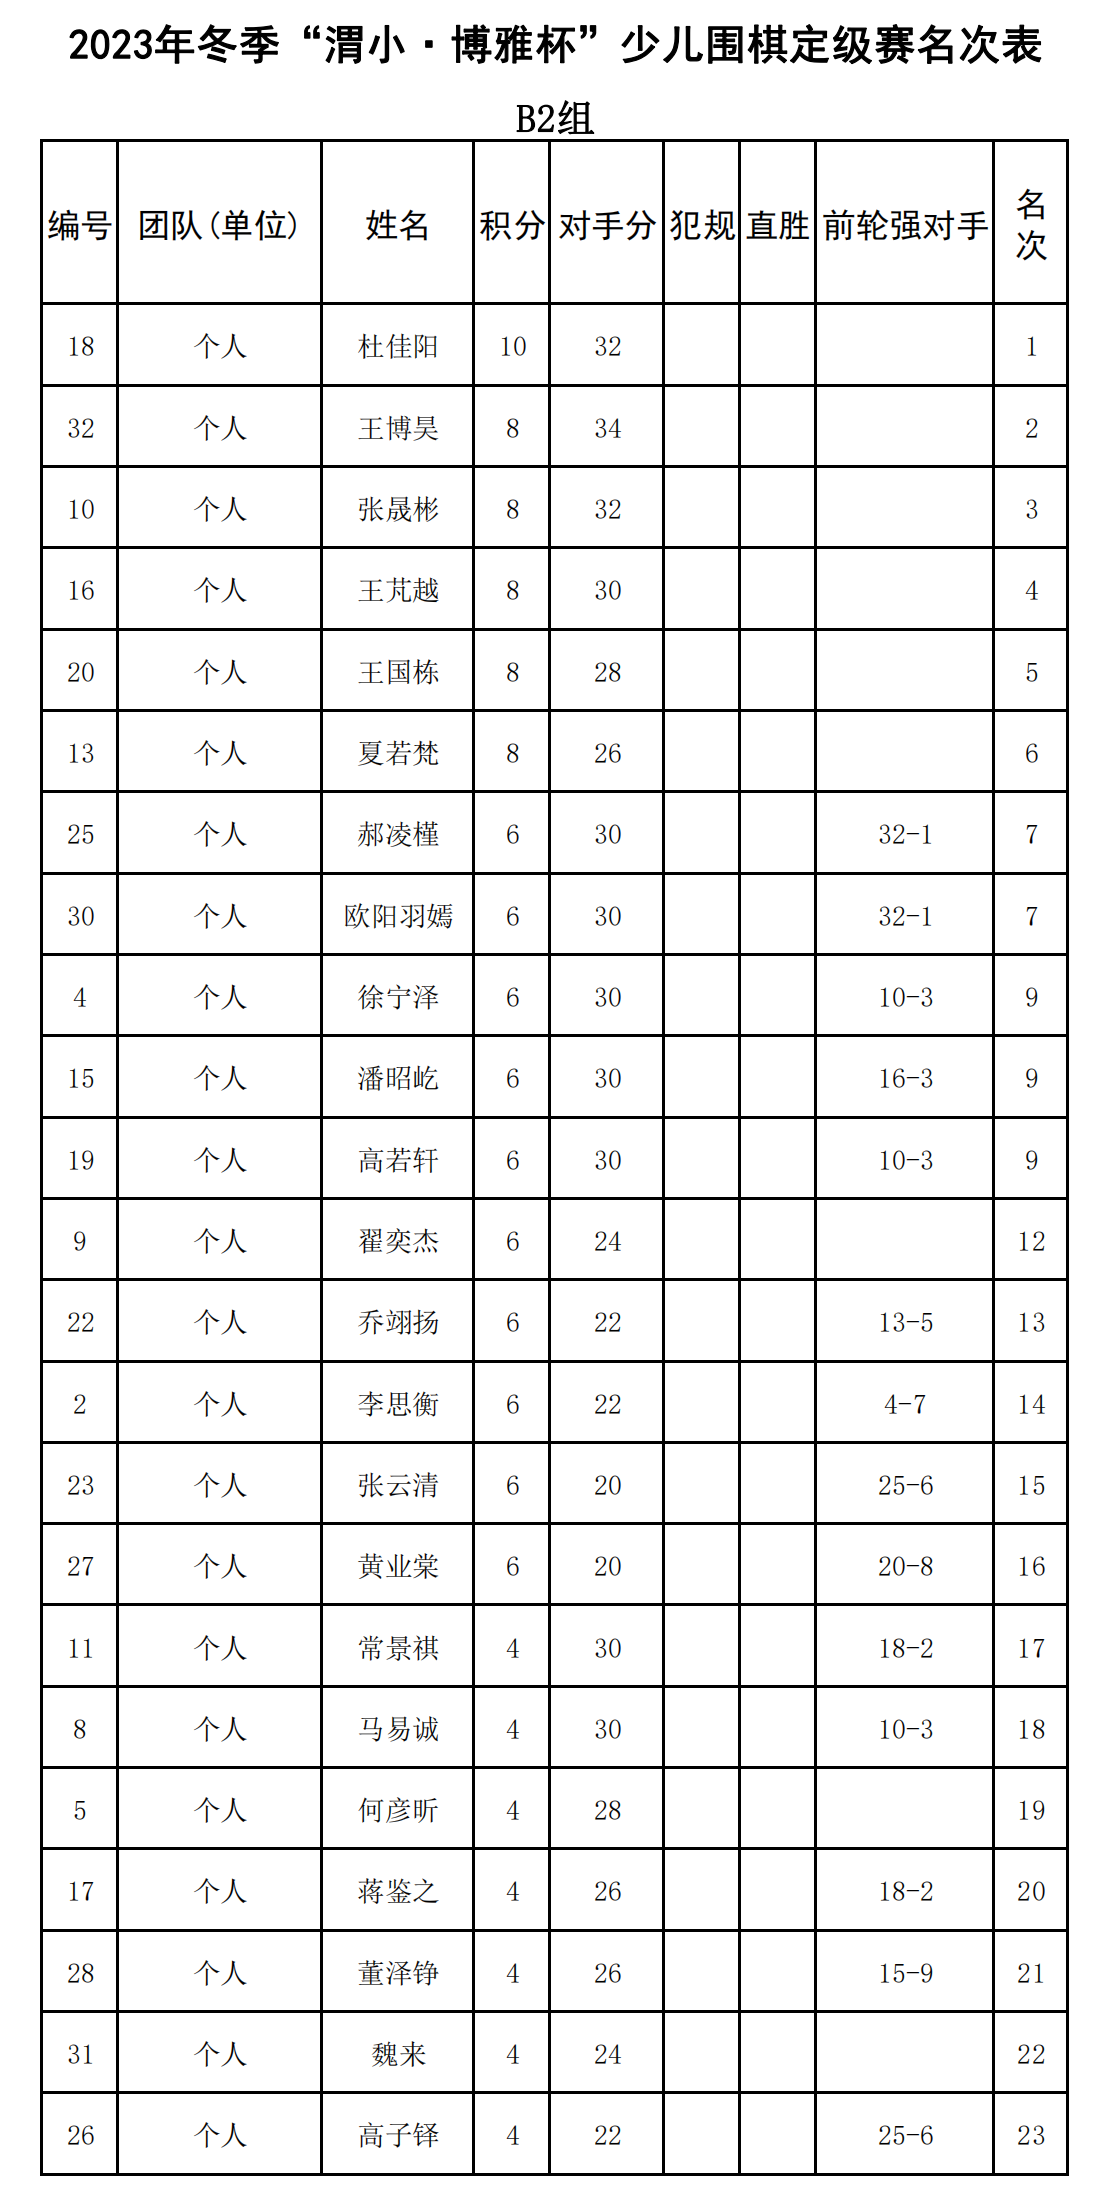 2023年冬季“渭小·博雅杯”少儿围棋定级赛B2组(名次表)_00.png